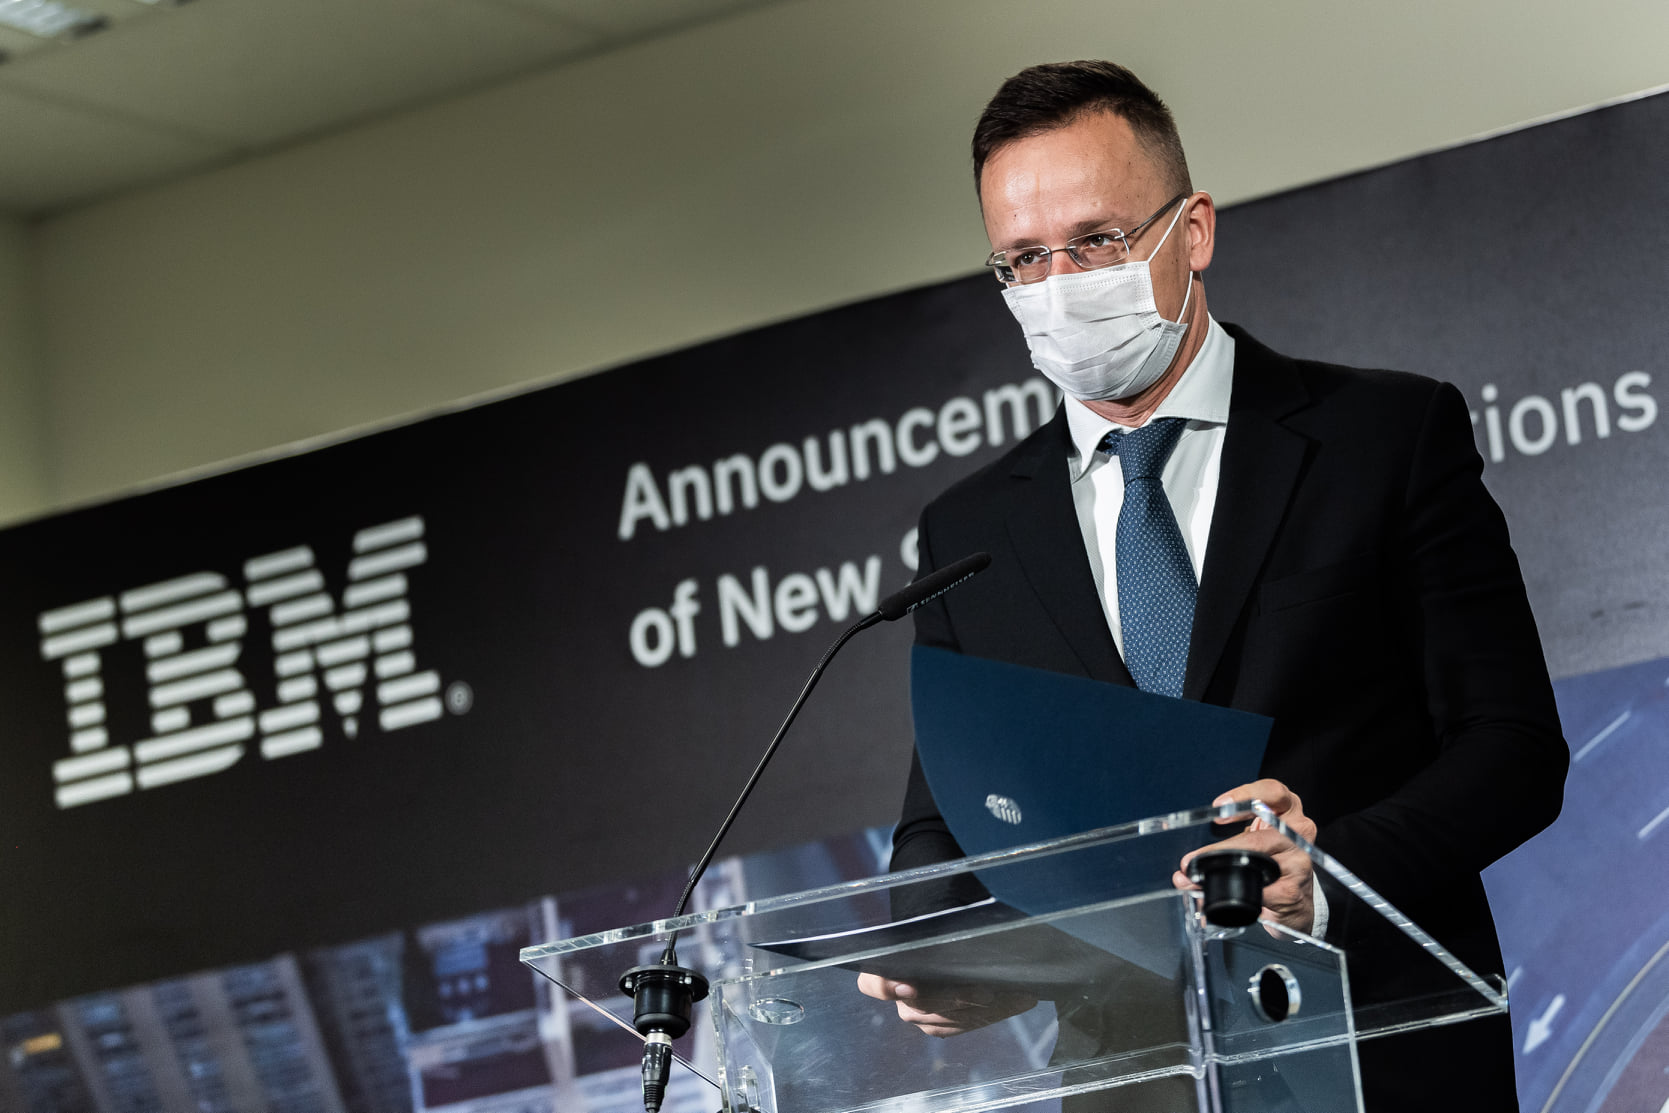 Háromszáz új munkahelyet teremt az IBM új beruházása Székesfehérváron